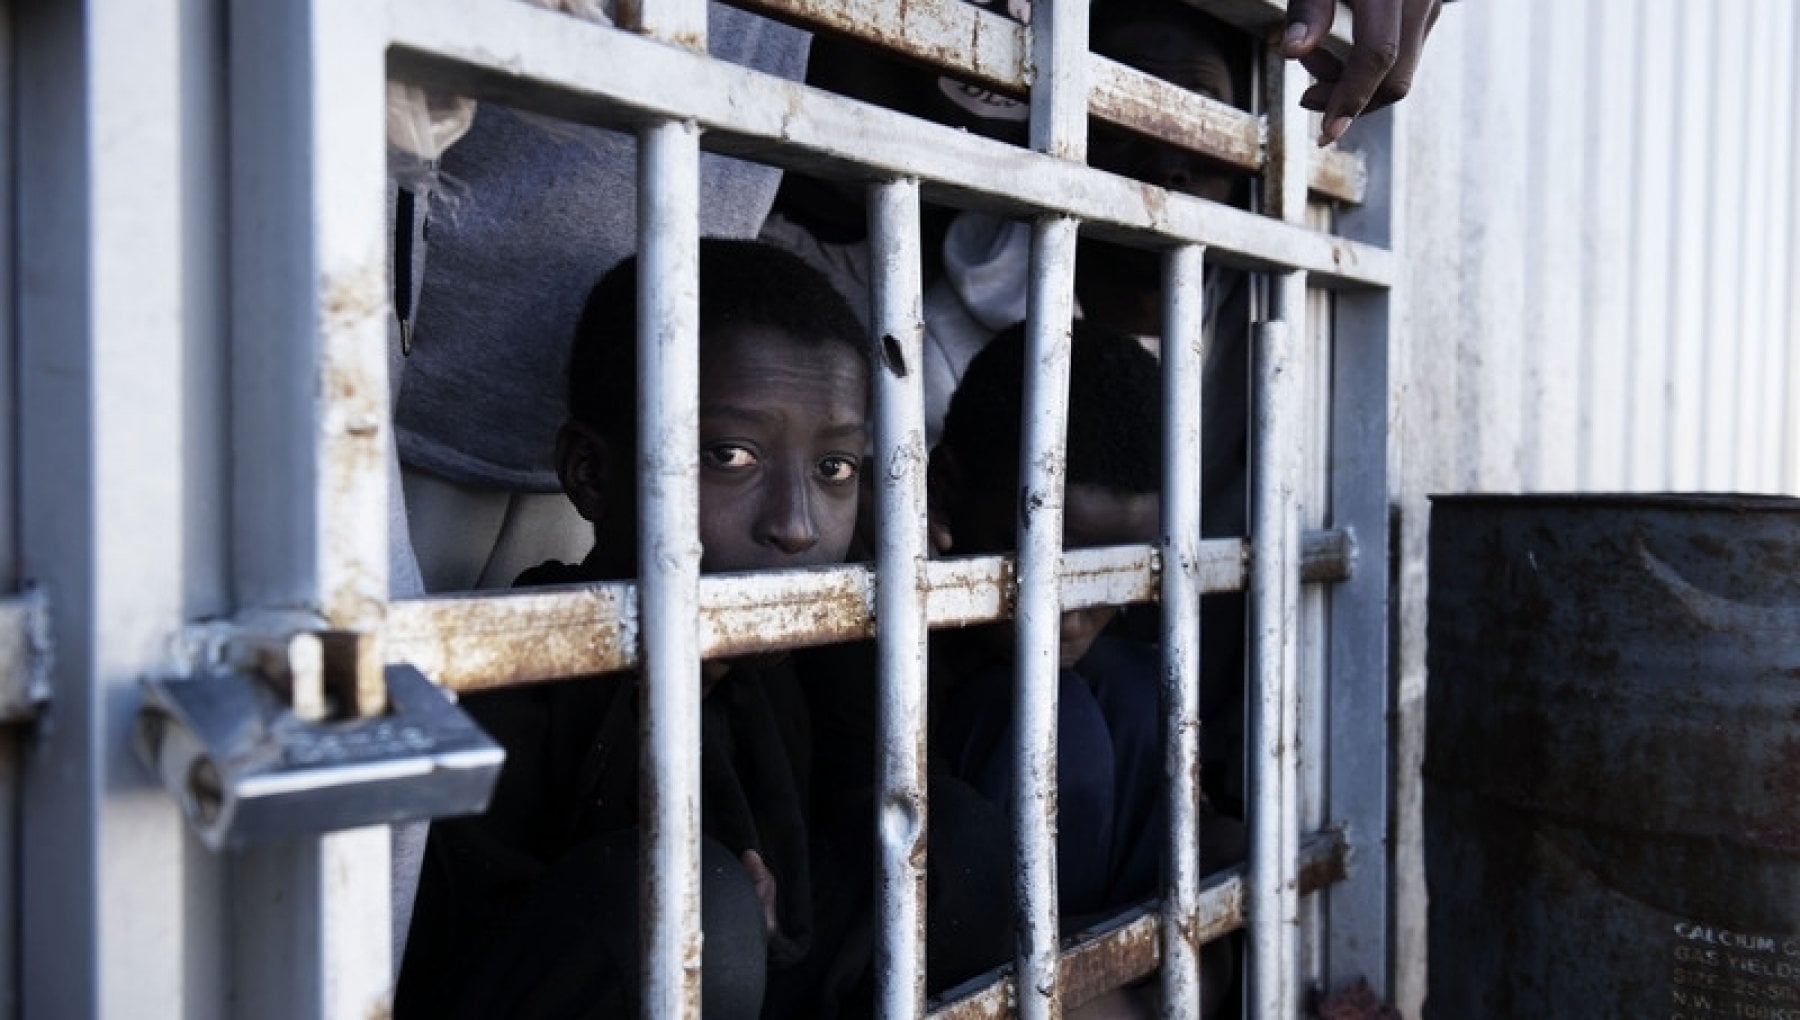 L'imminente arrivo di 685 mila migranti dalla Libia è un falso: l'analisi degli 007 forzata per scopi politici